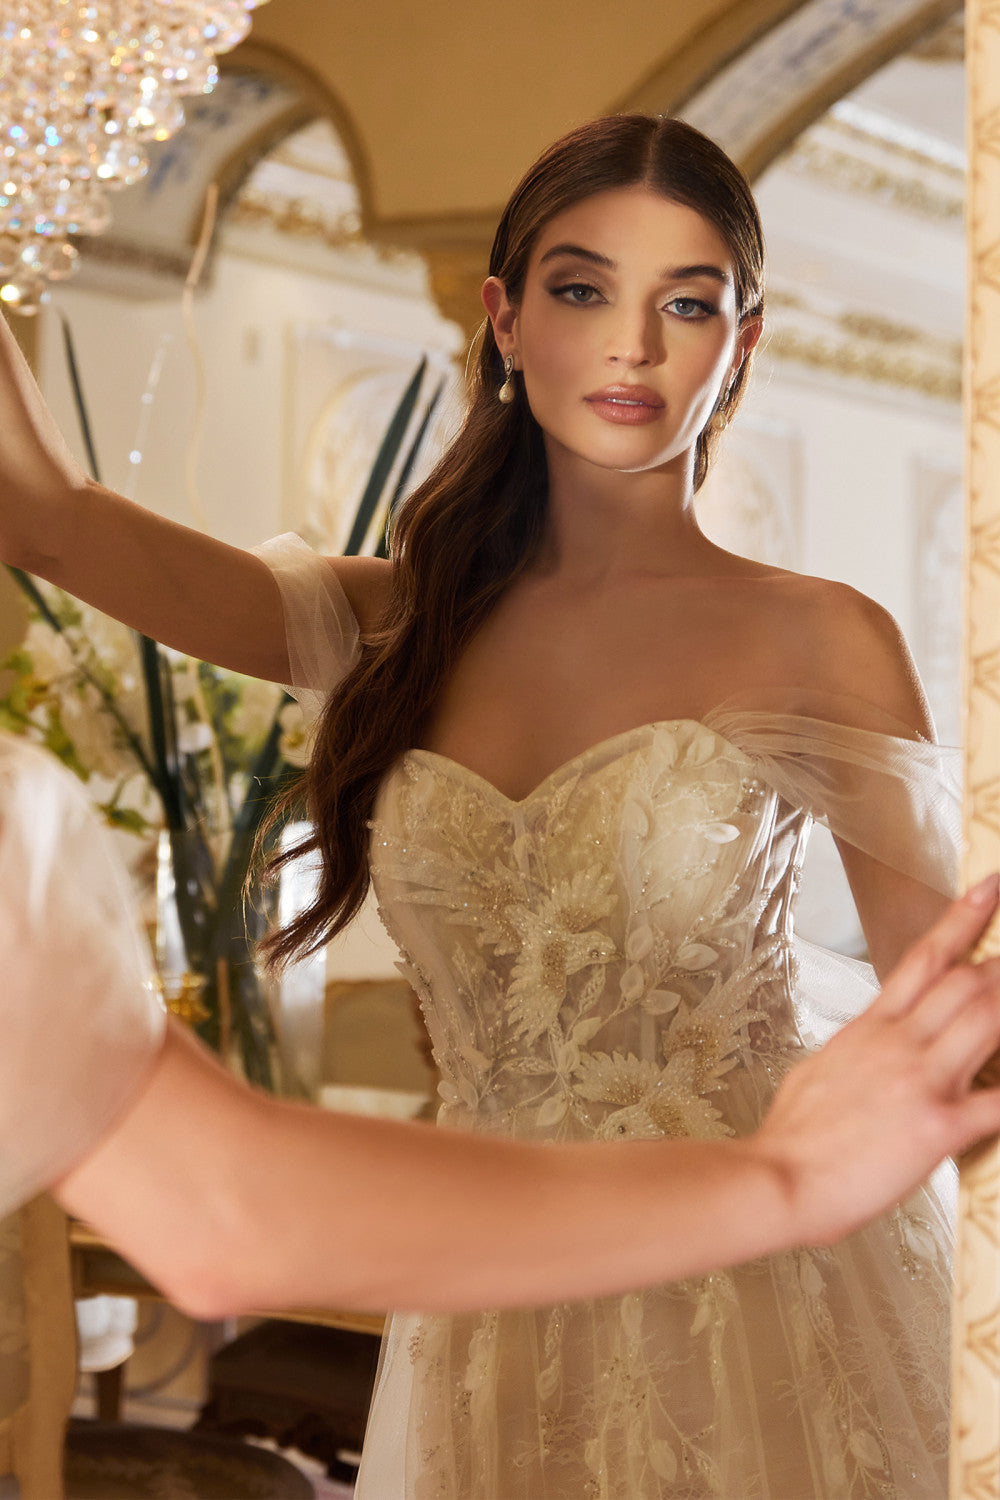 Off-shoulder A-line dress w/ floral appliqués for modern boho wedding-smcdress